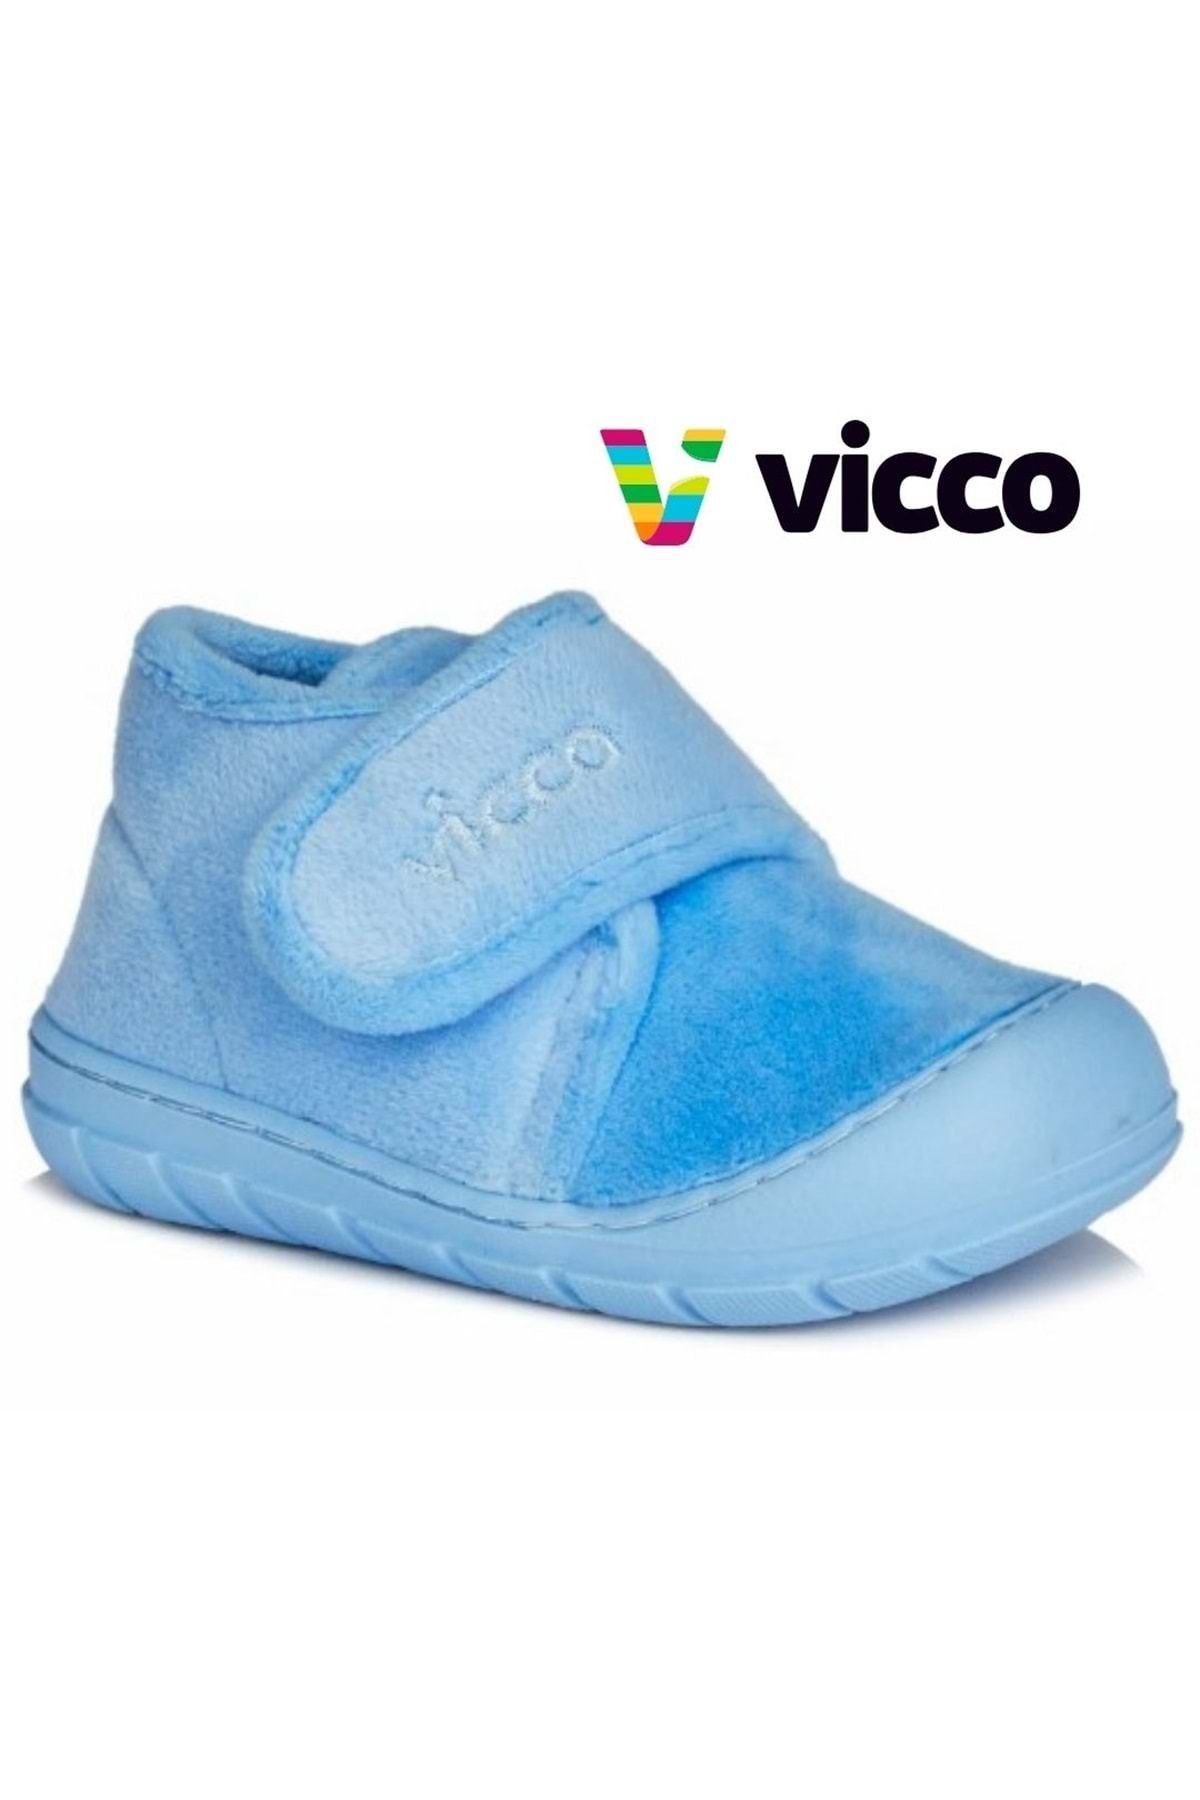 Kids Club Shoes Vicco Color İlk Adım Bebek Ortopedik Çocuk Panduf Spor Ayakkabı MAVİ